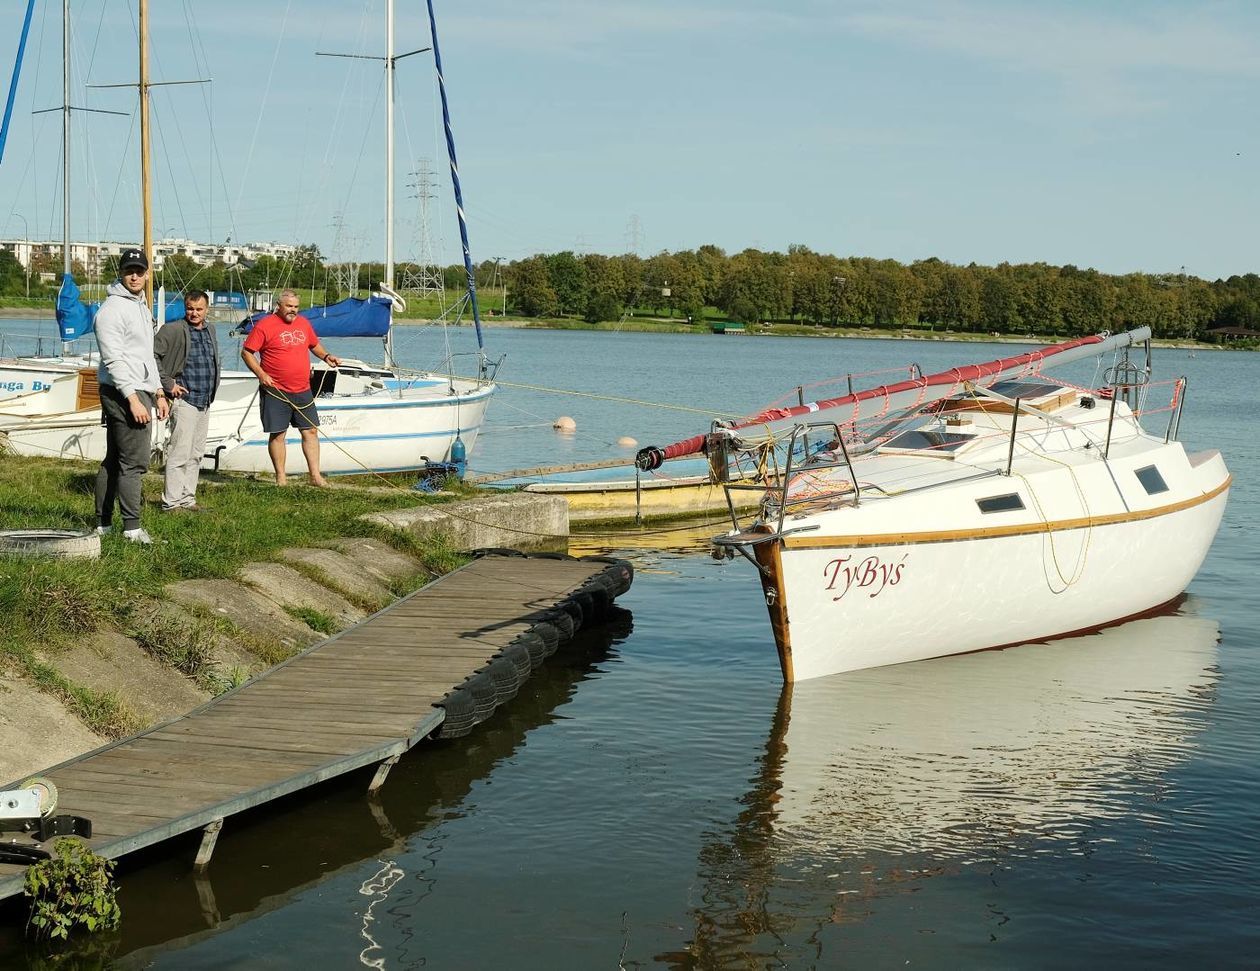  Wodowanie jachtu TyByś na Zalewie Zemborzyckim (zdjęcie 1) - Autor: Maciej Kaczanowski